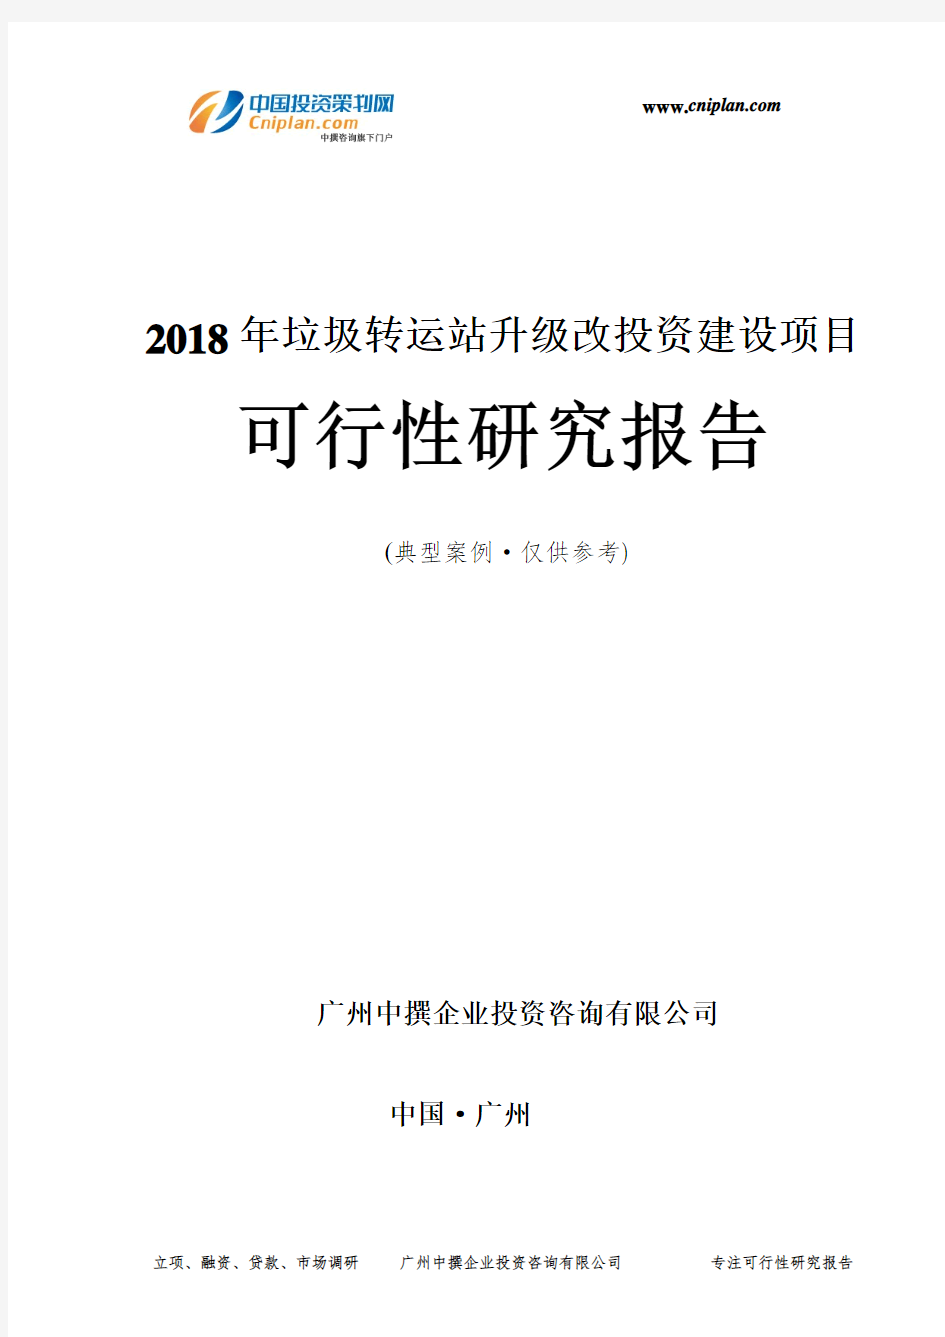 2018年垃圾转运站升级改投资建设项目可行性研究报告-广州中撰咨询